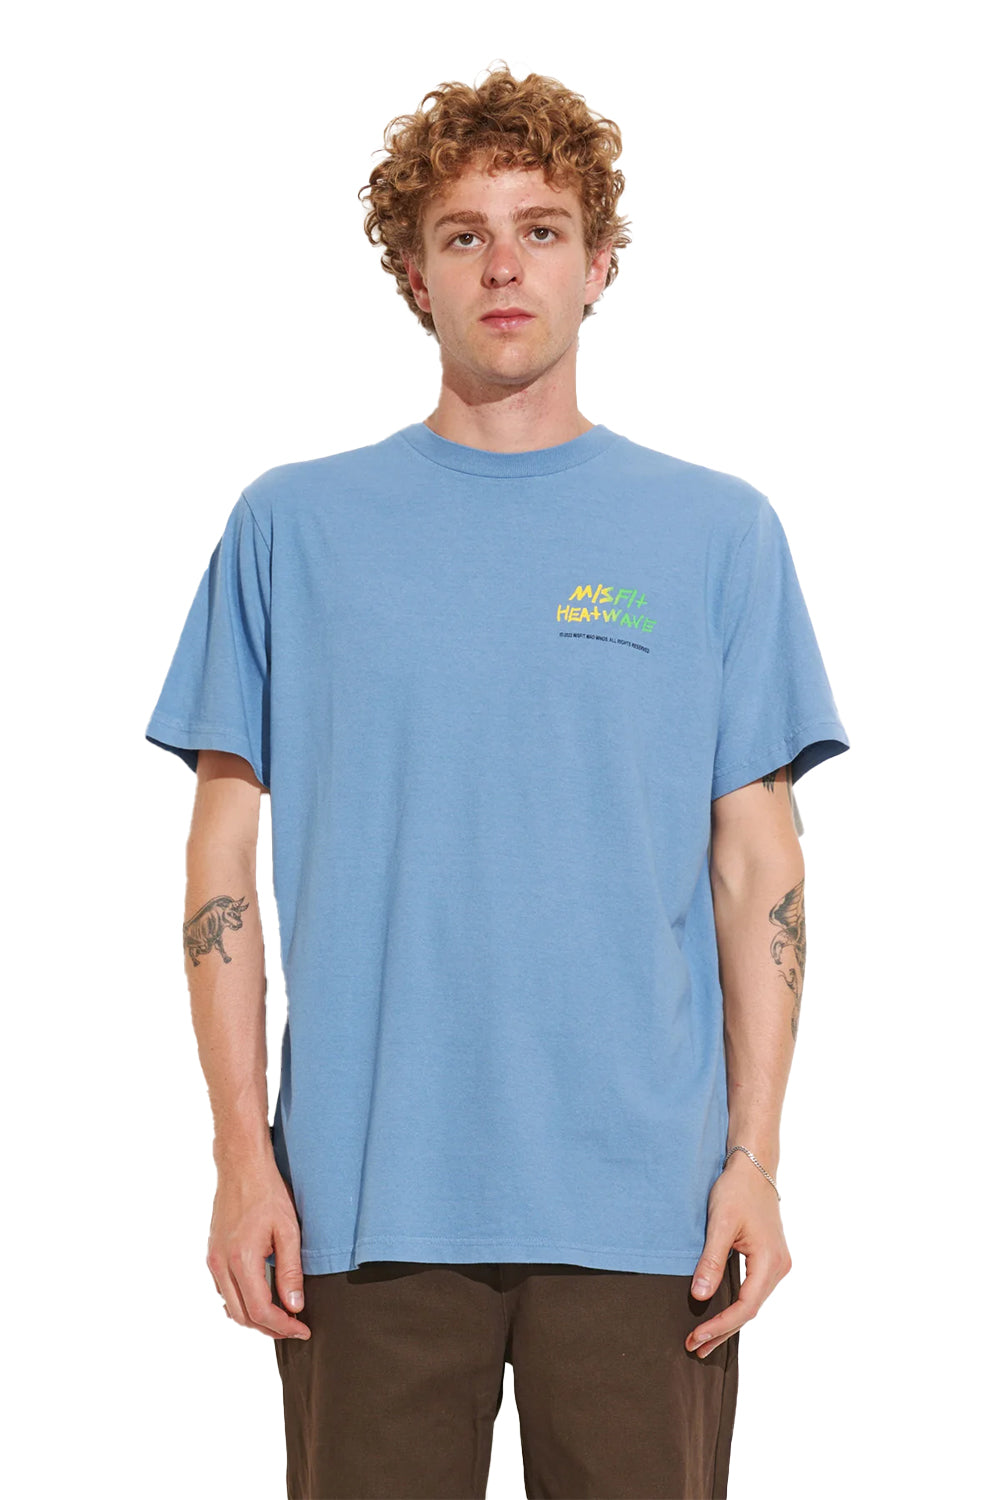 MISFIT Mens Heatwave 50/50 Reg S/S T-Shirt